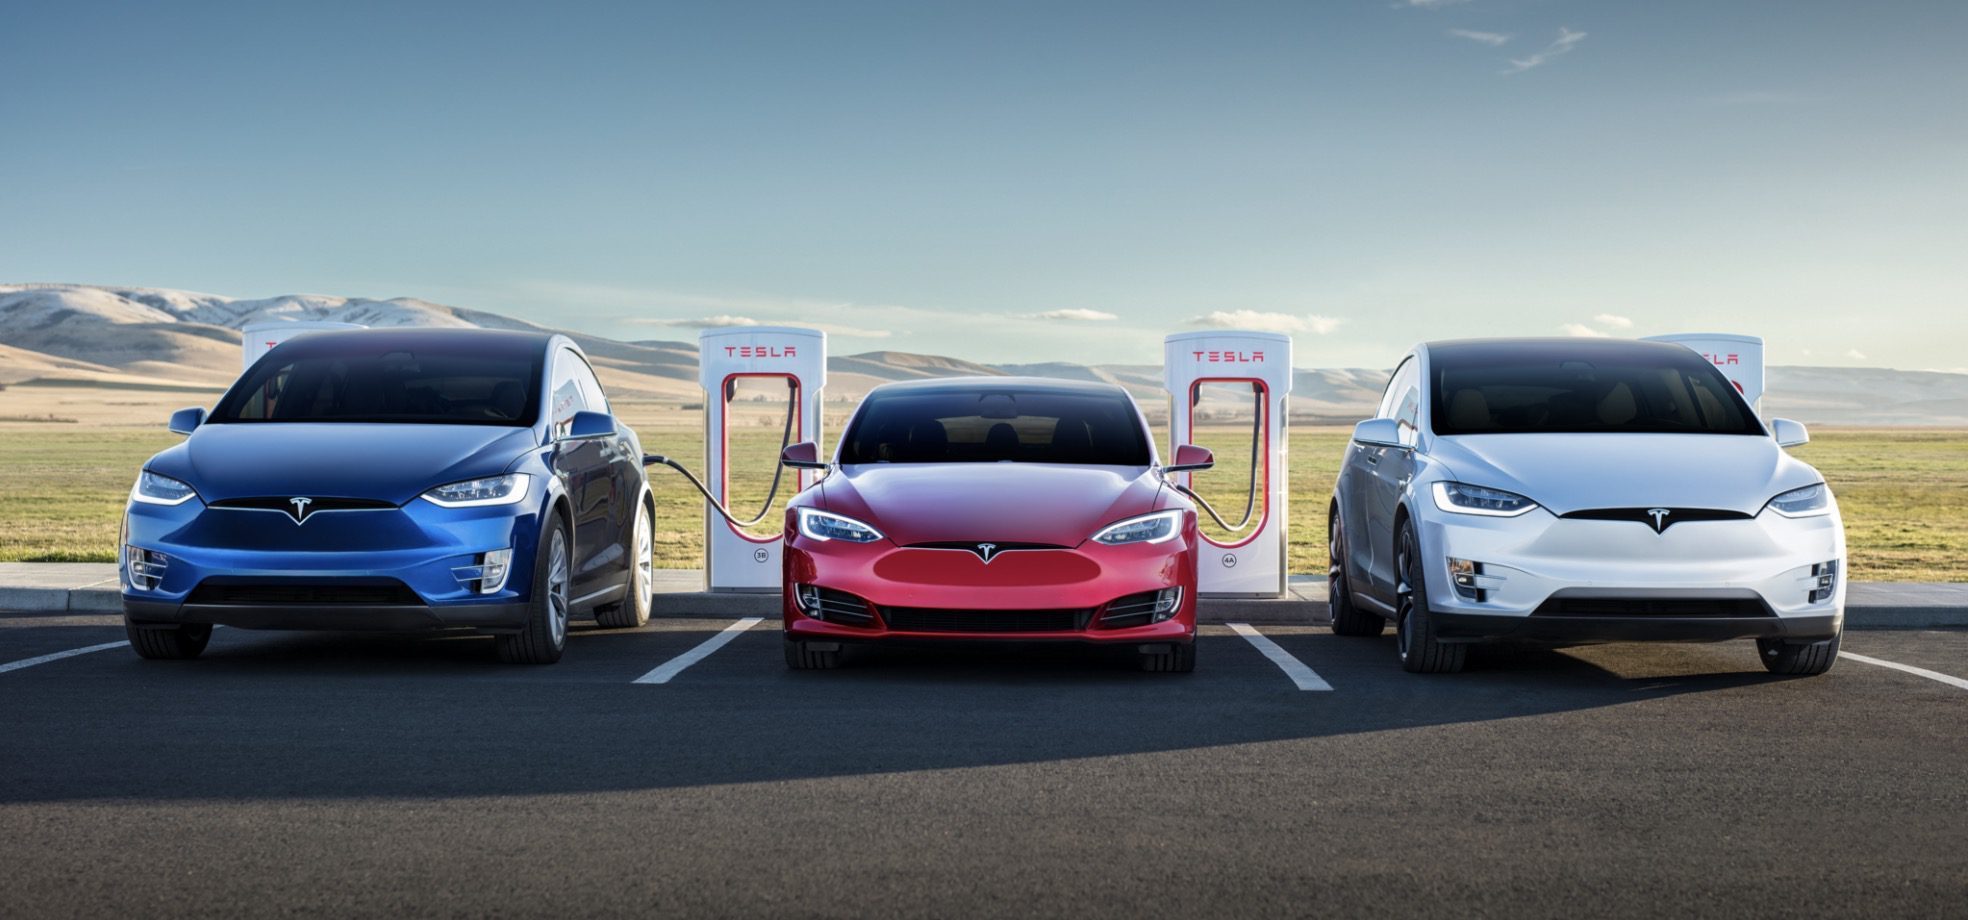 Tesla снова предлагает неограниченную бесплатную зарядку покупателям некоторых электромобилей Model S и Model X